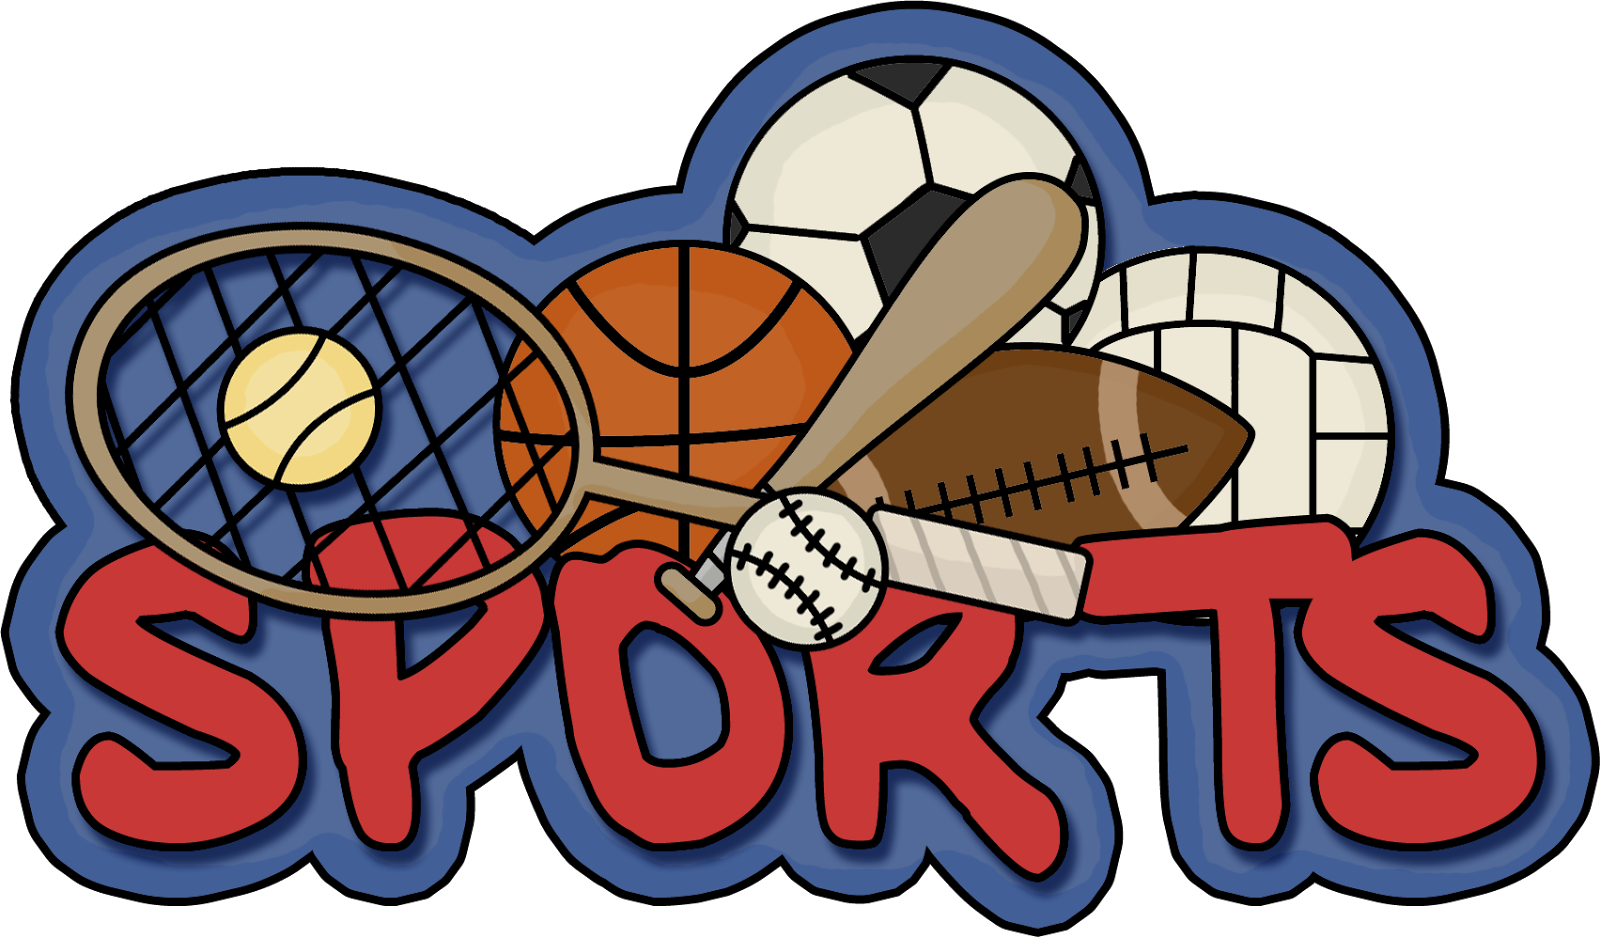 Спортивные логотипы. Эмблемы спортивных товаров. Спорт слово. Спорт надпись.